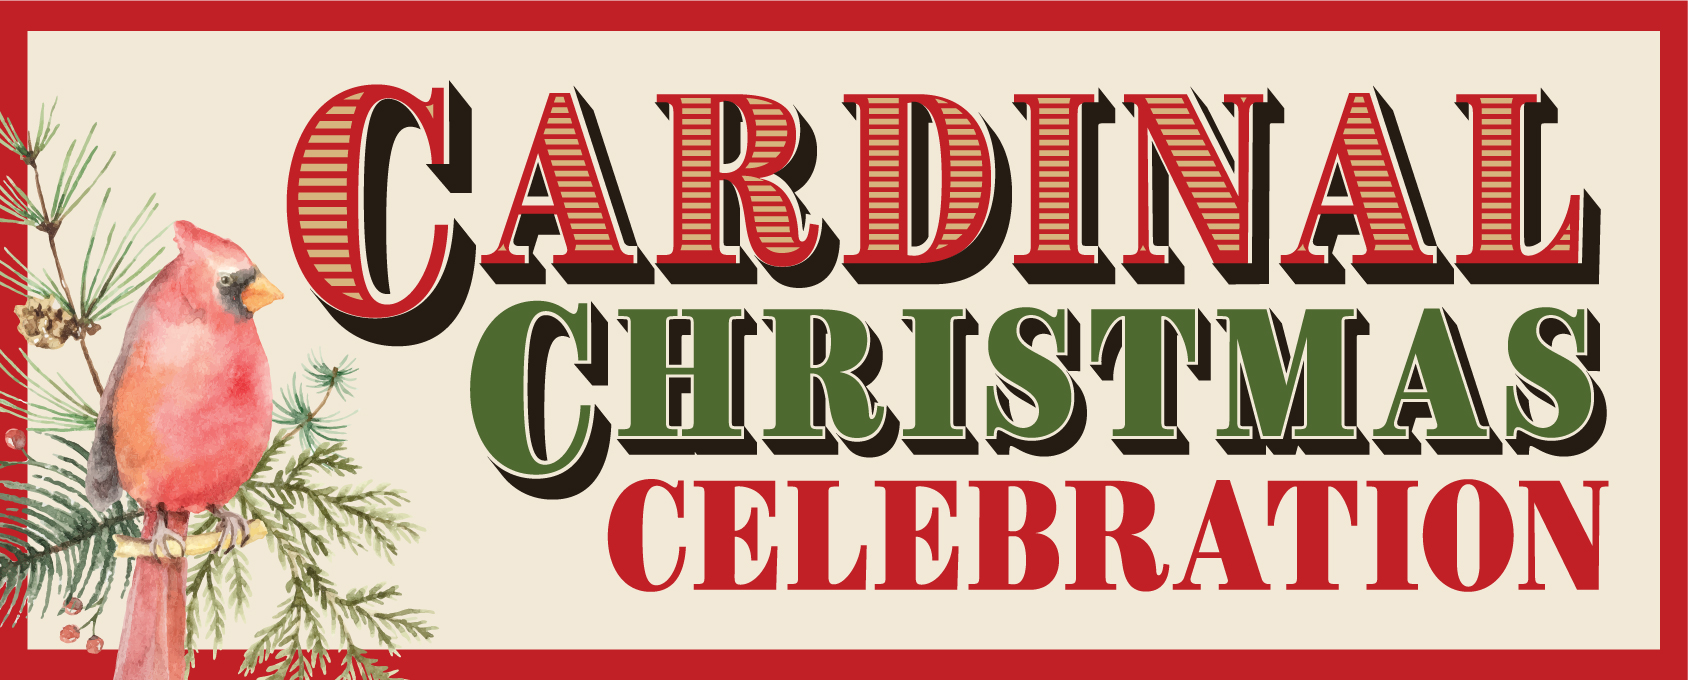 Image of cardinal Christmas celebration logo. 